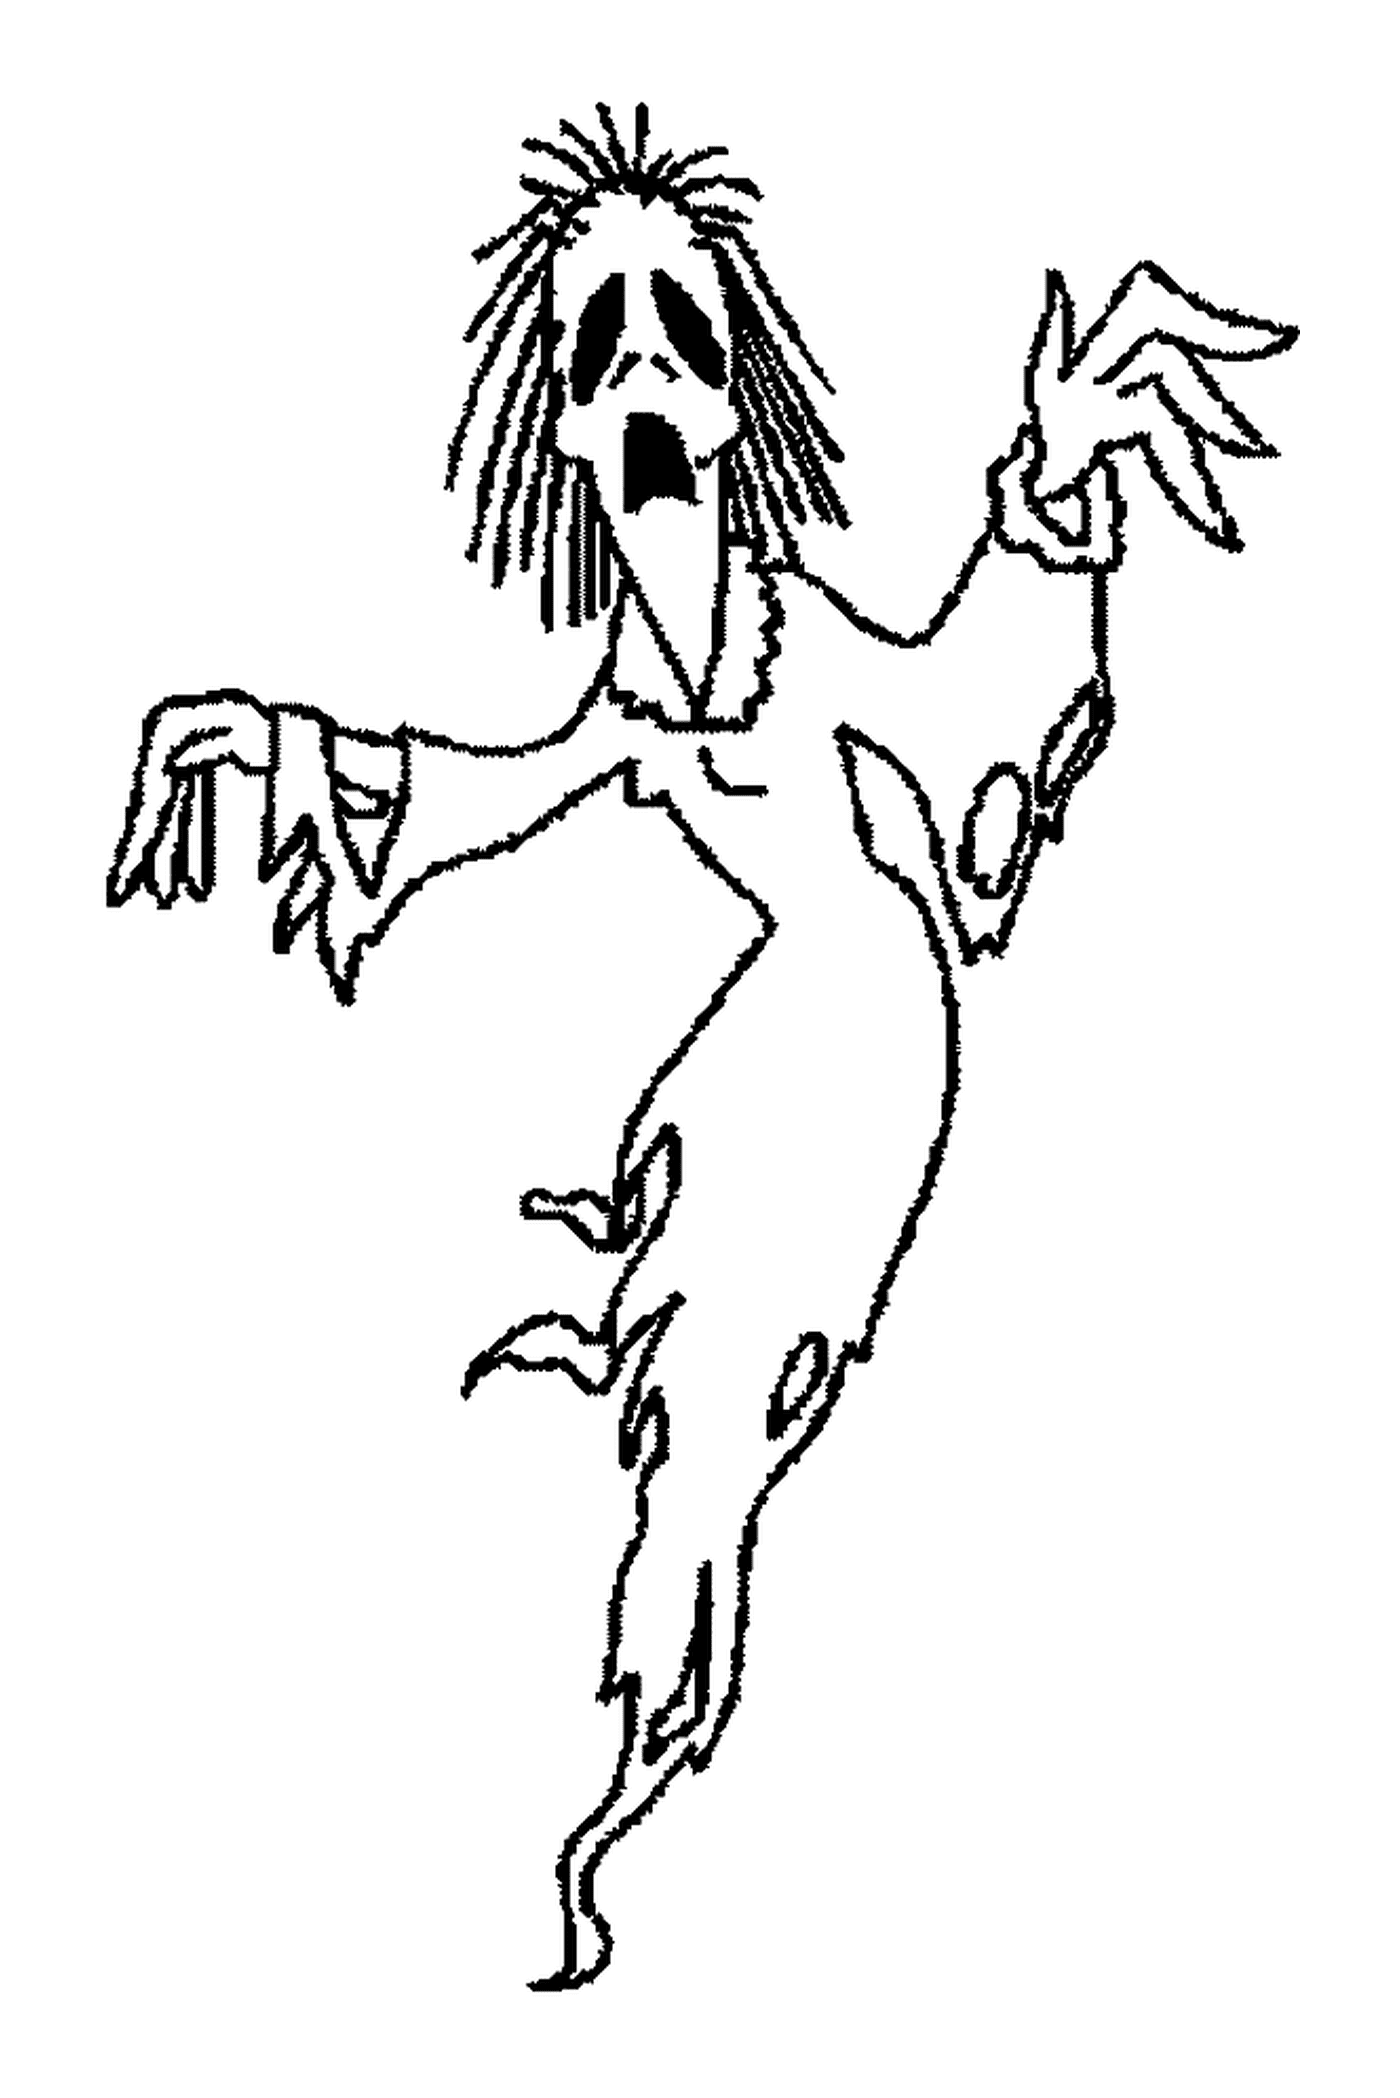  persona bailando disfrazada de fantasma 